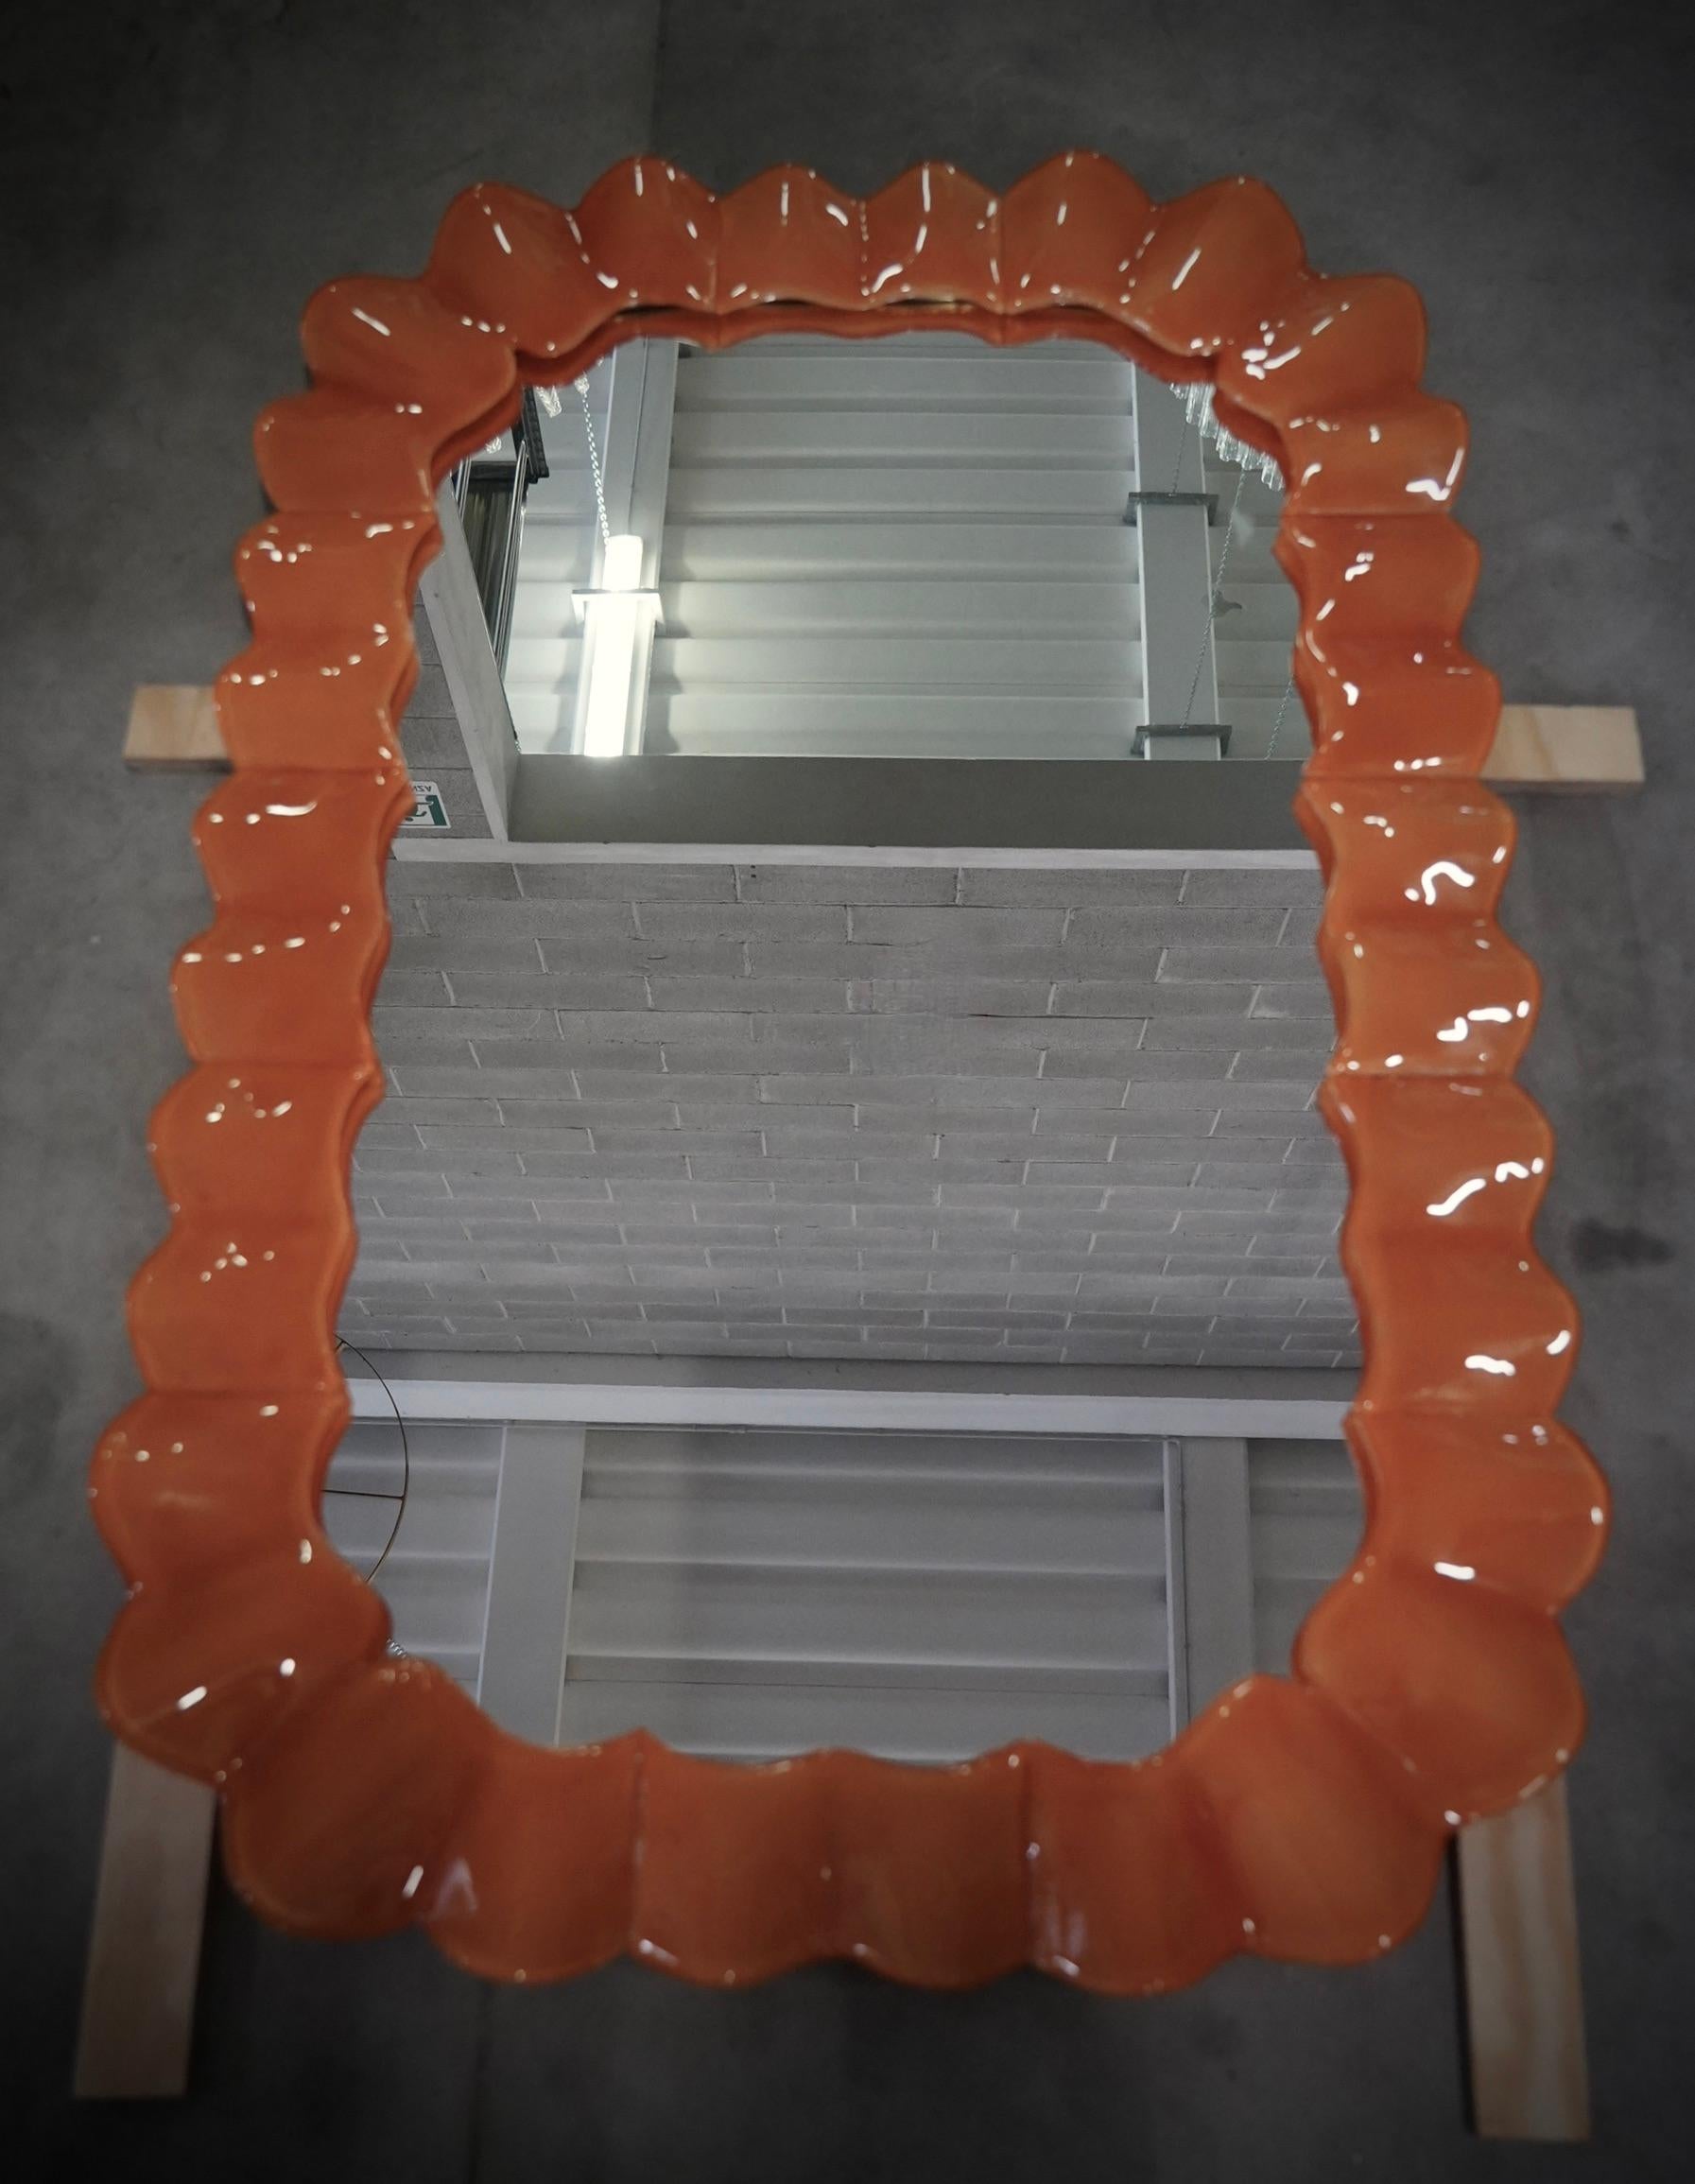 Prächtiger Spiegel aus leuchtend orangefarbenem Murano-Glas. Ein Spiegel, der allein Ihr Zuhause einrichtet. Der reiche, aber geschmackvolle Spiegel hat ein ganz besonderes Design, mit einer sehr schönen Form dieser Glasteile.

Der Spiegel hat eine